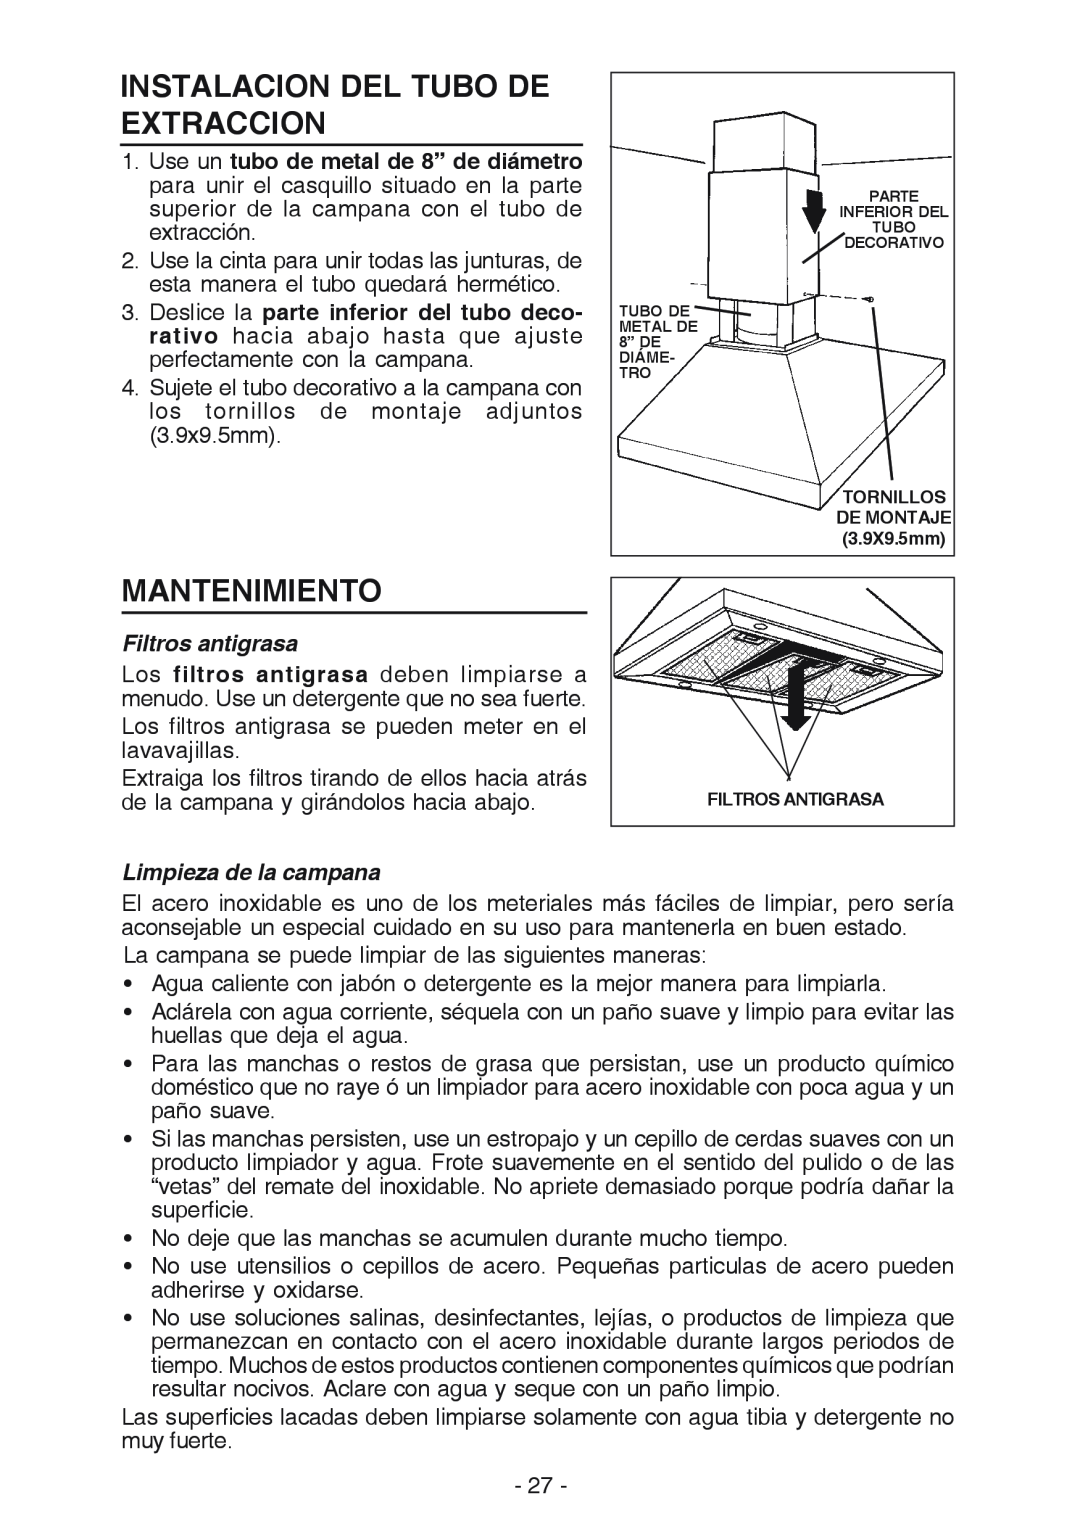 Broan 637004 manual Mantenimiento, Filtros antigrasa, Limpieza de la campana, Instalacion Del Tubo De Extraccion 